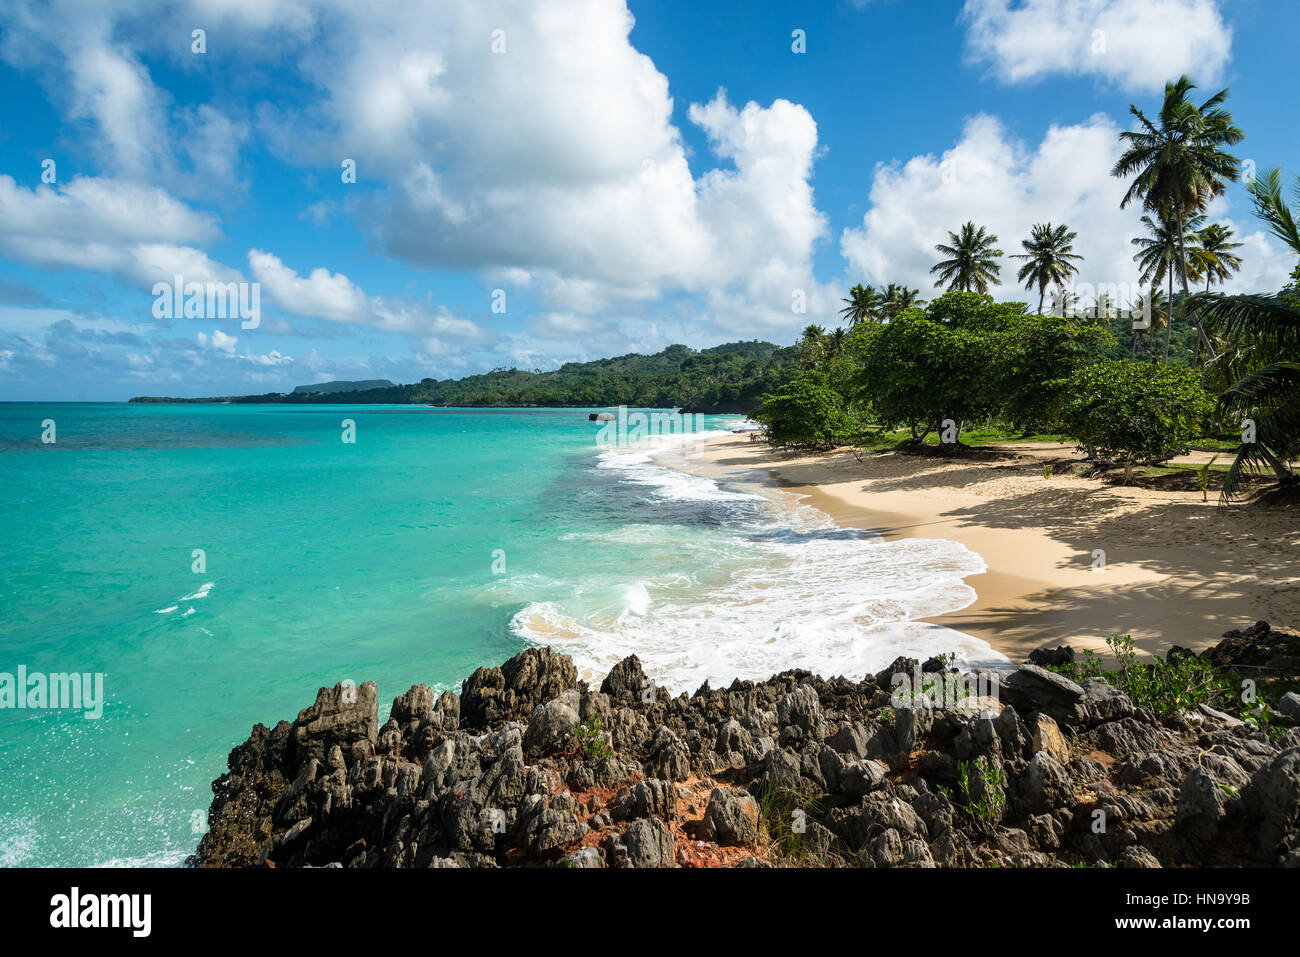 La pintoresca playa de "Playa Rincón" alrededor de Las Galeras, República Dominicana Foto de stock